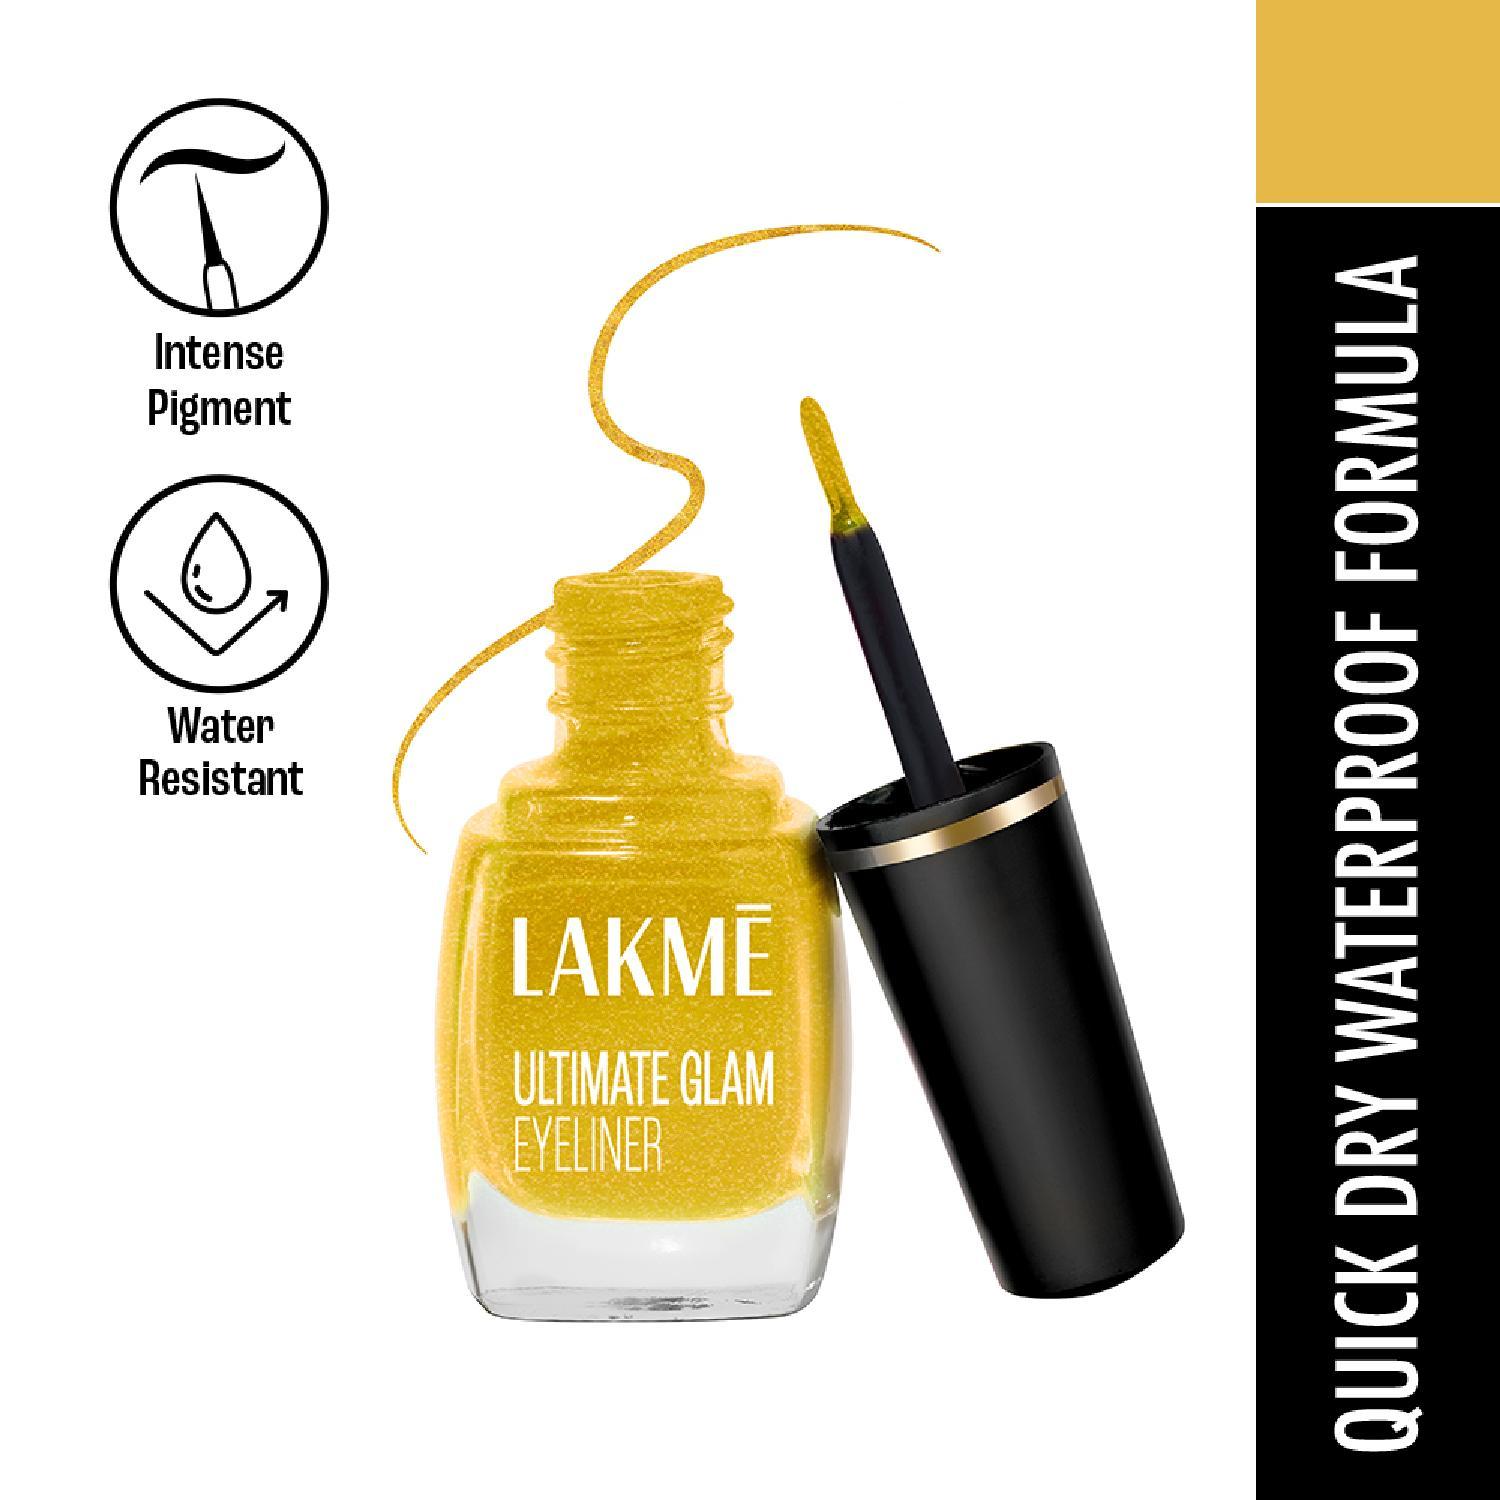 Lakme | Lakme Ultimate Glam Eye Liner, Semi Matte, Golden (9 ml)